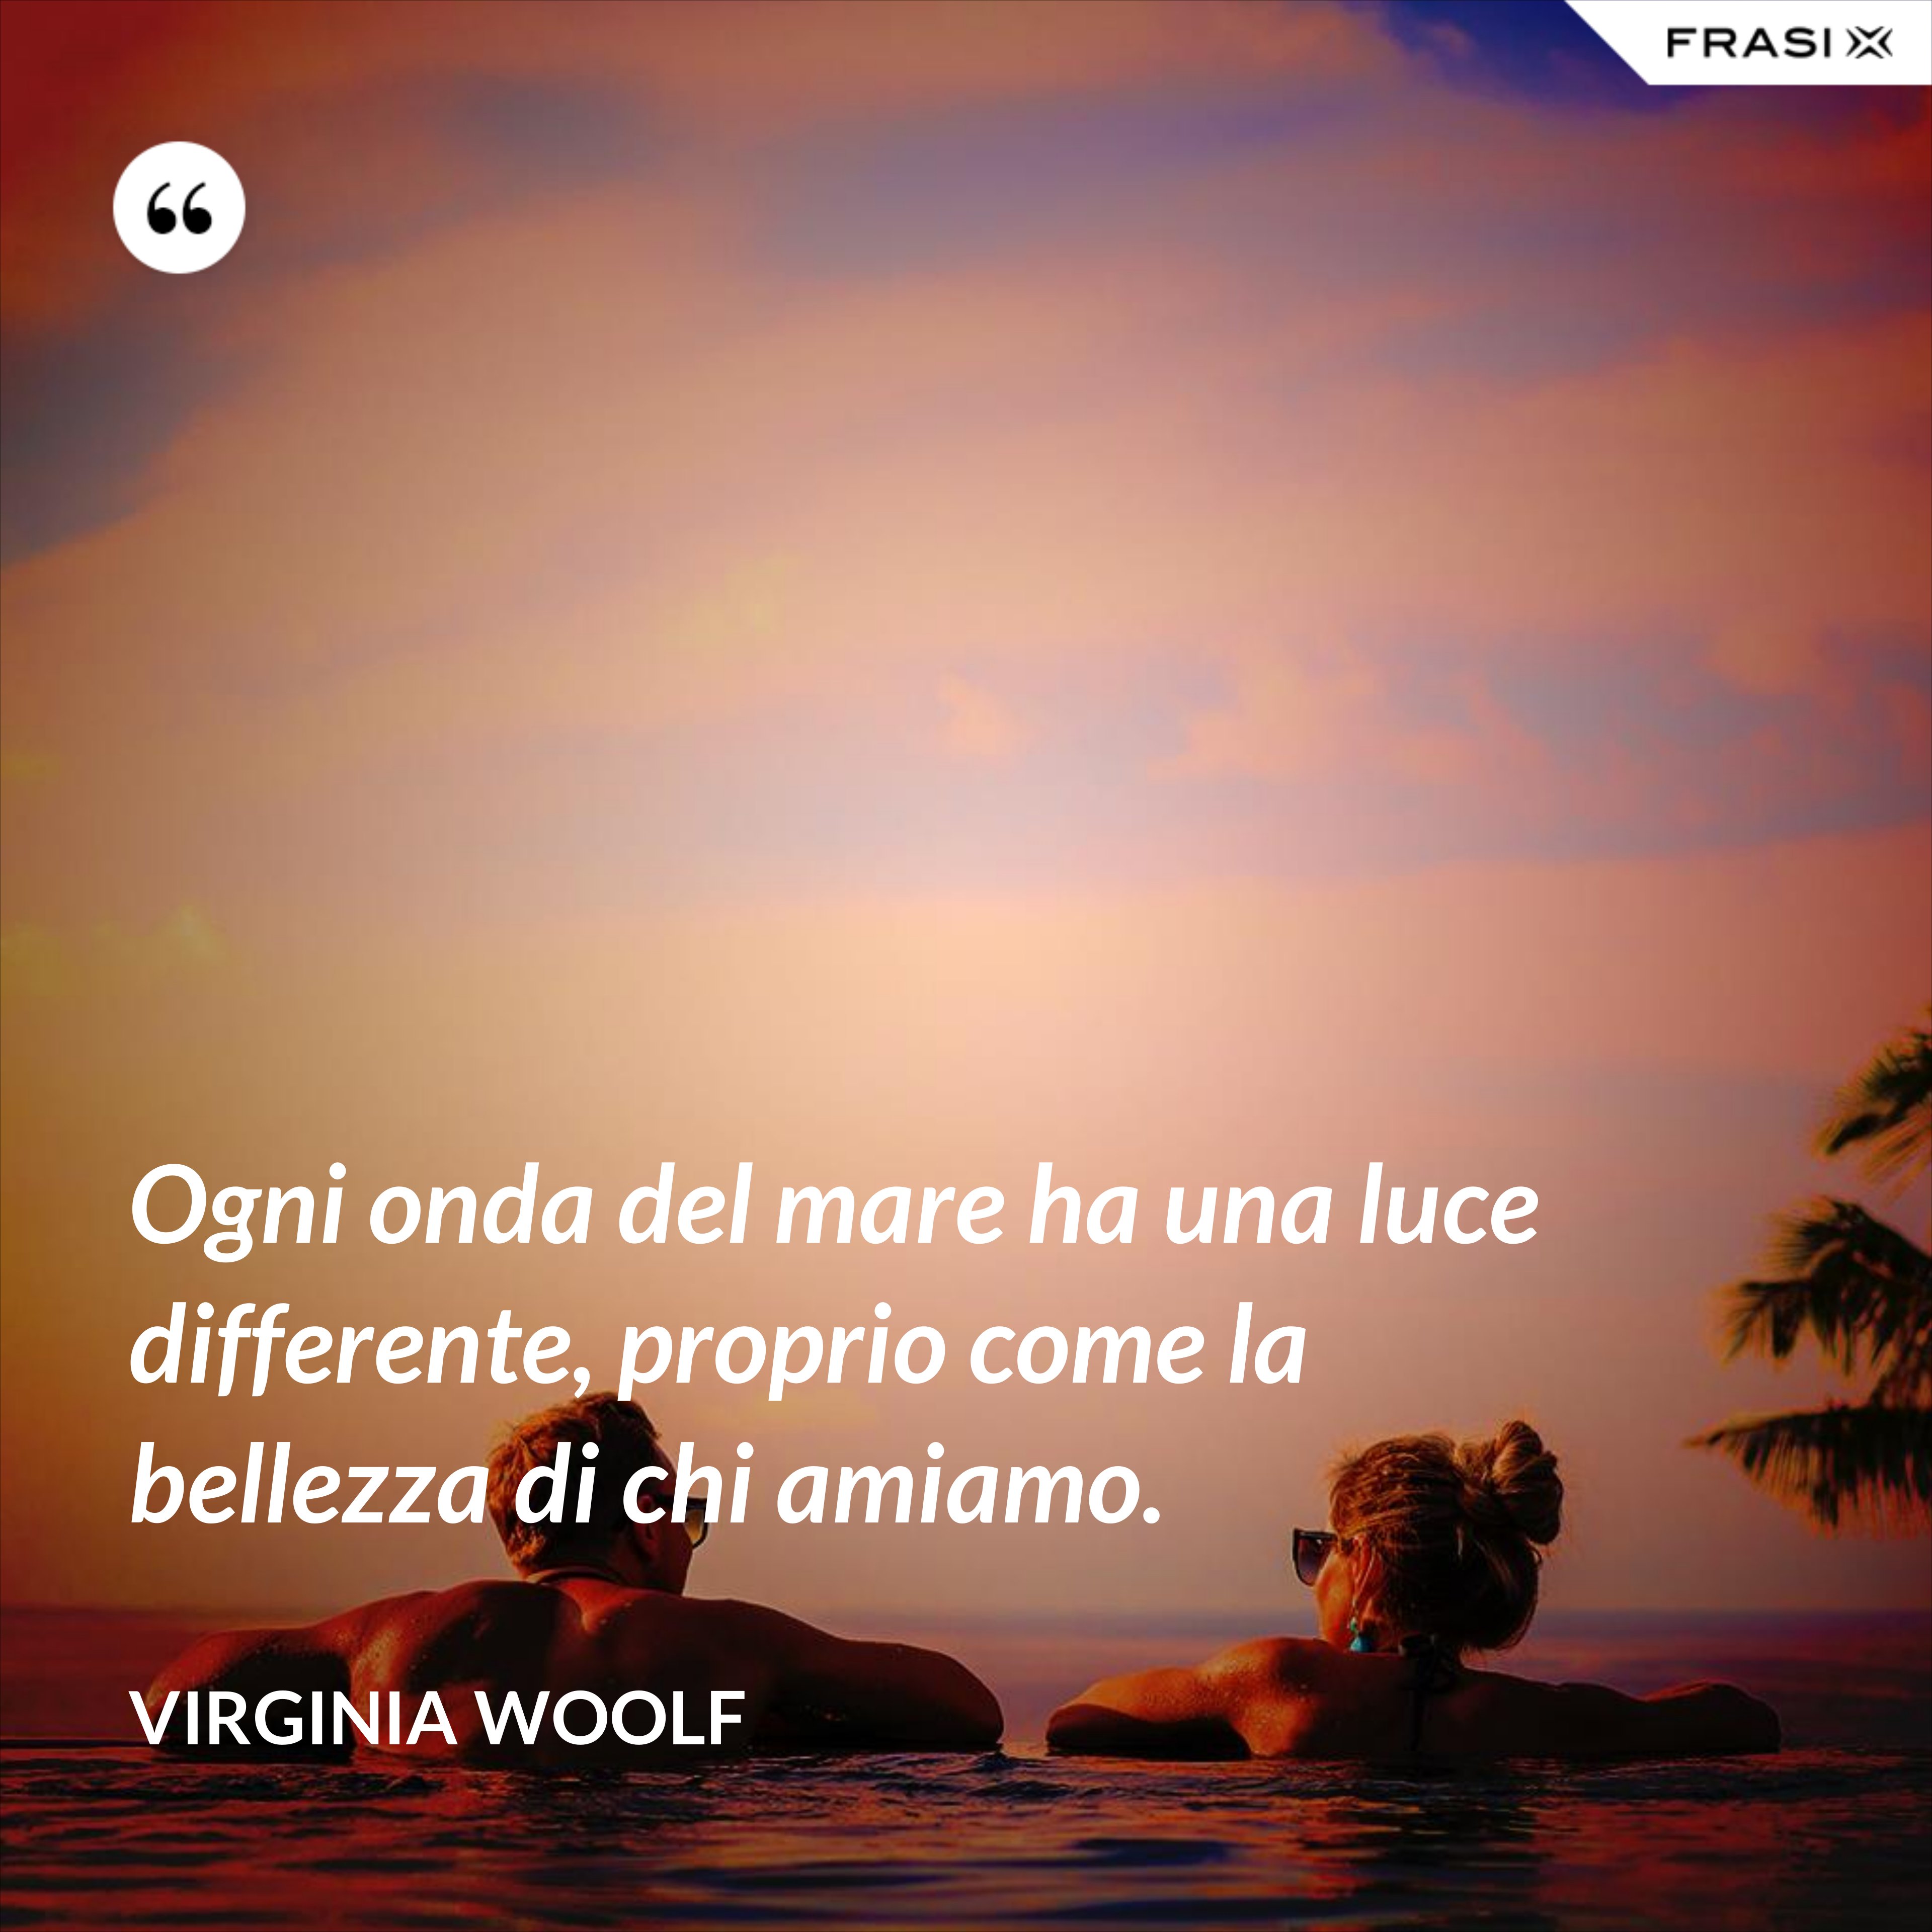 Ogni onda del mare ha una luce differente, proprio come la bellezza di chi amiamo. - Virginia Woolf